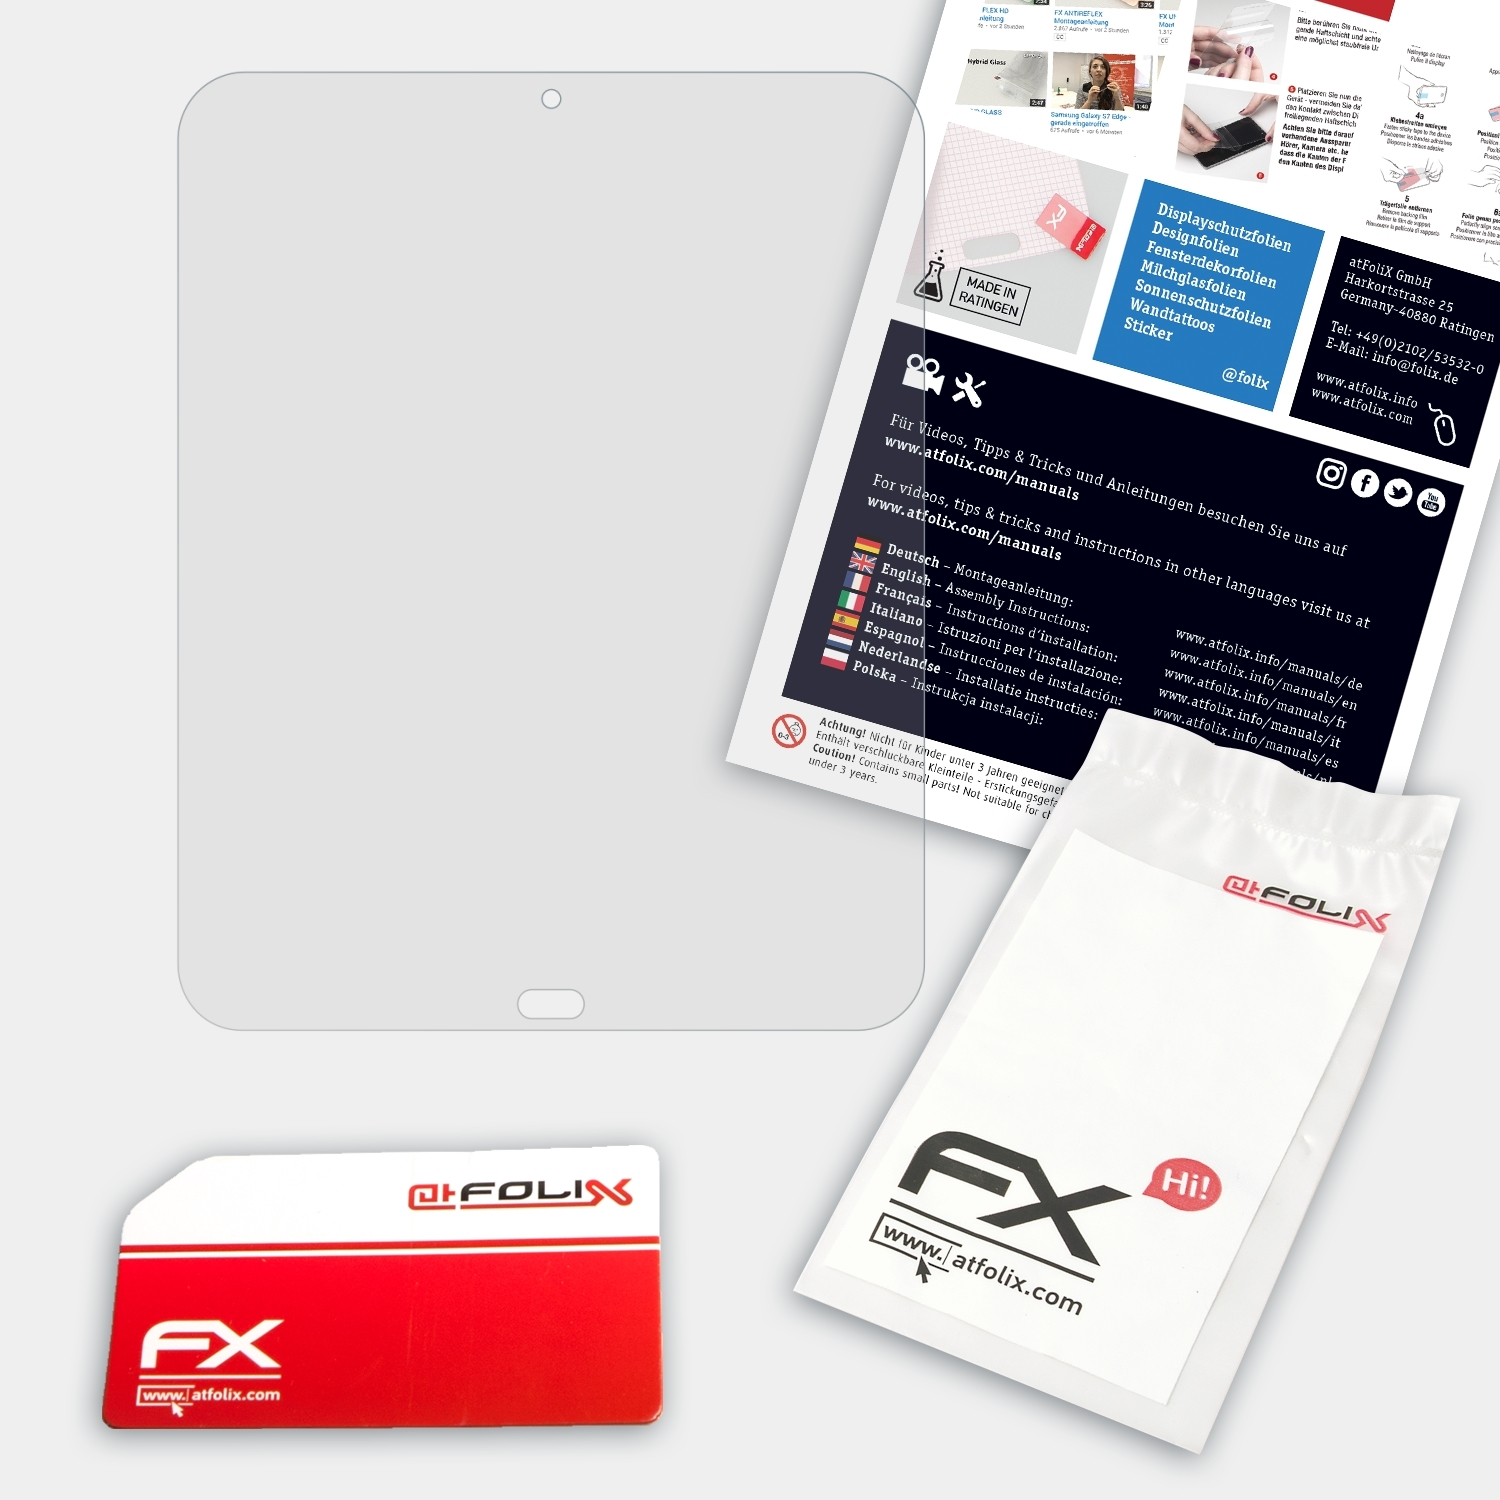 ATFOLIX Palm FX-Hybrid-Glass HP Schutzglas(für TouchPad)